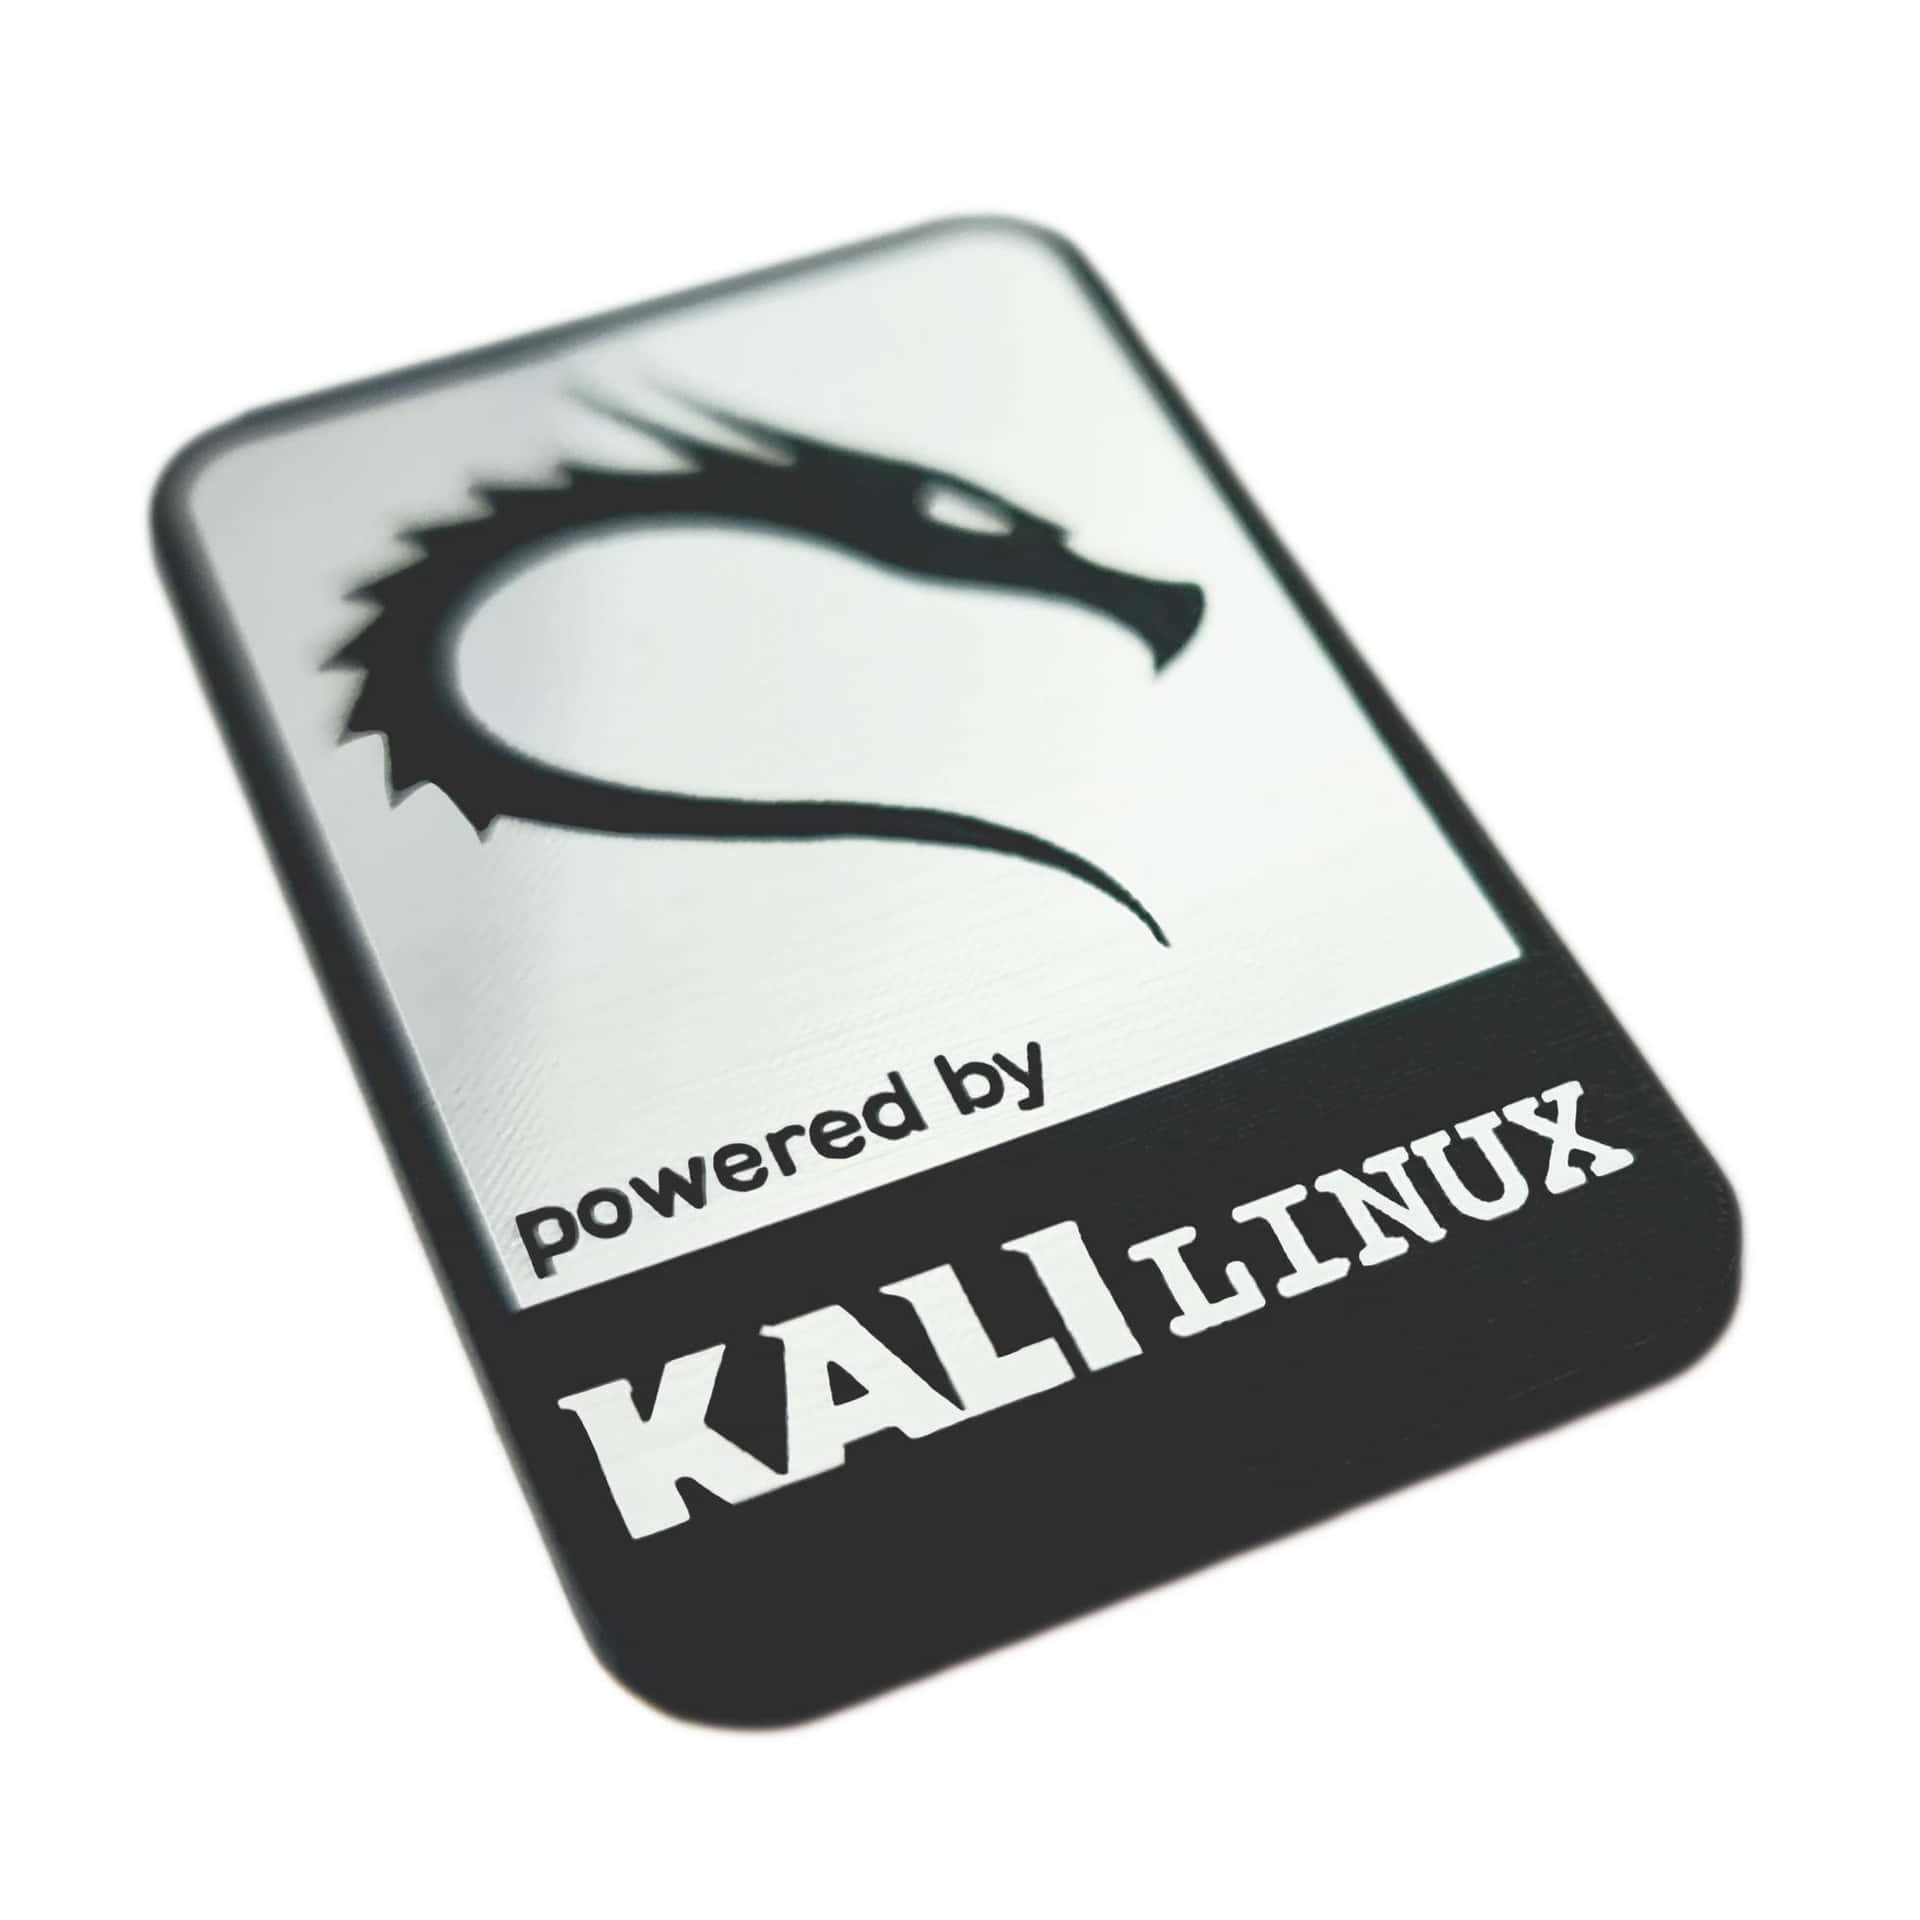 Imágenesde Kali Linux.